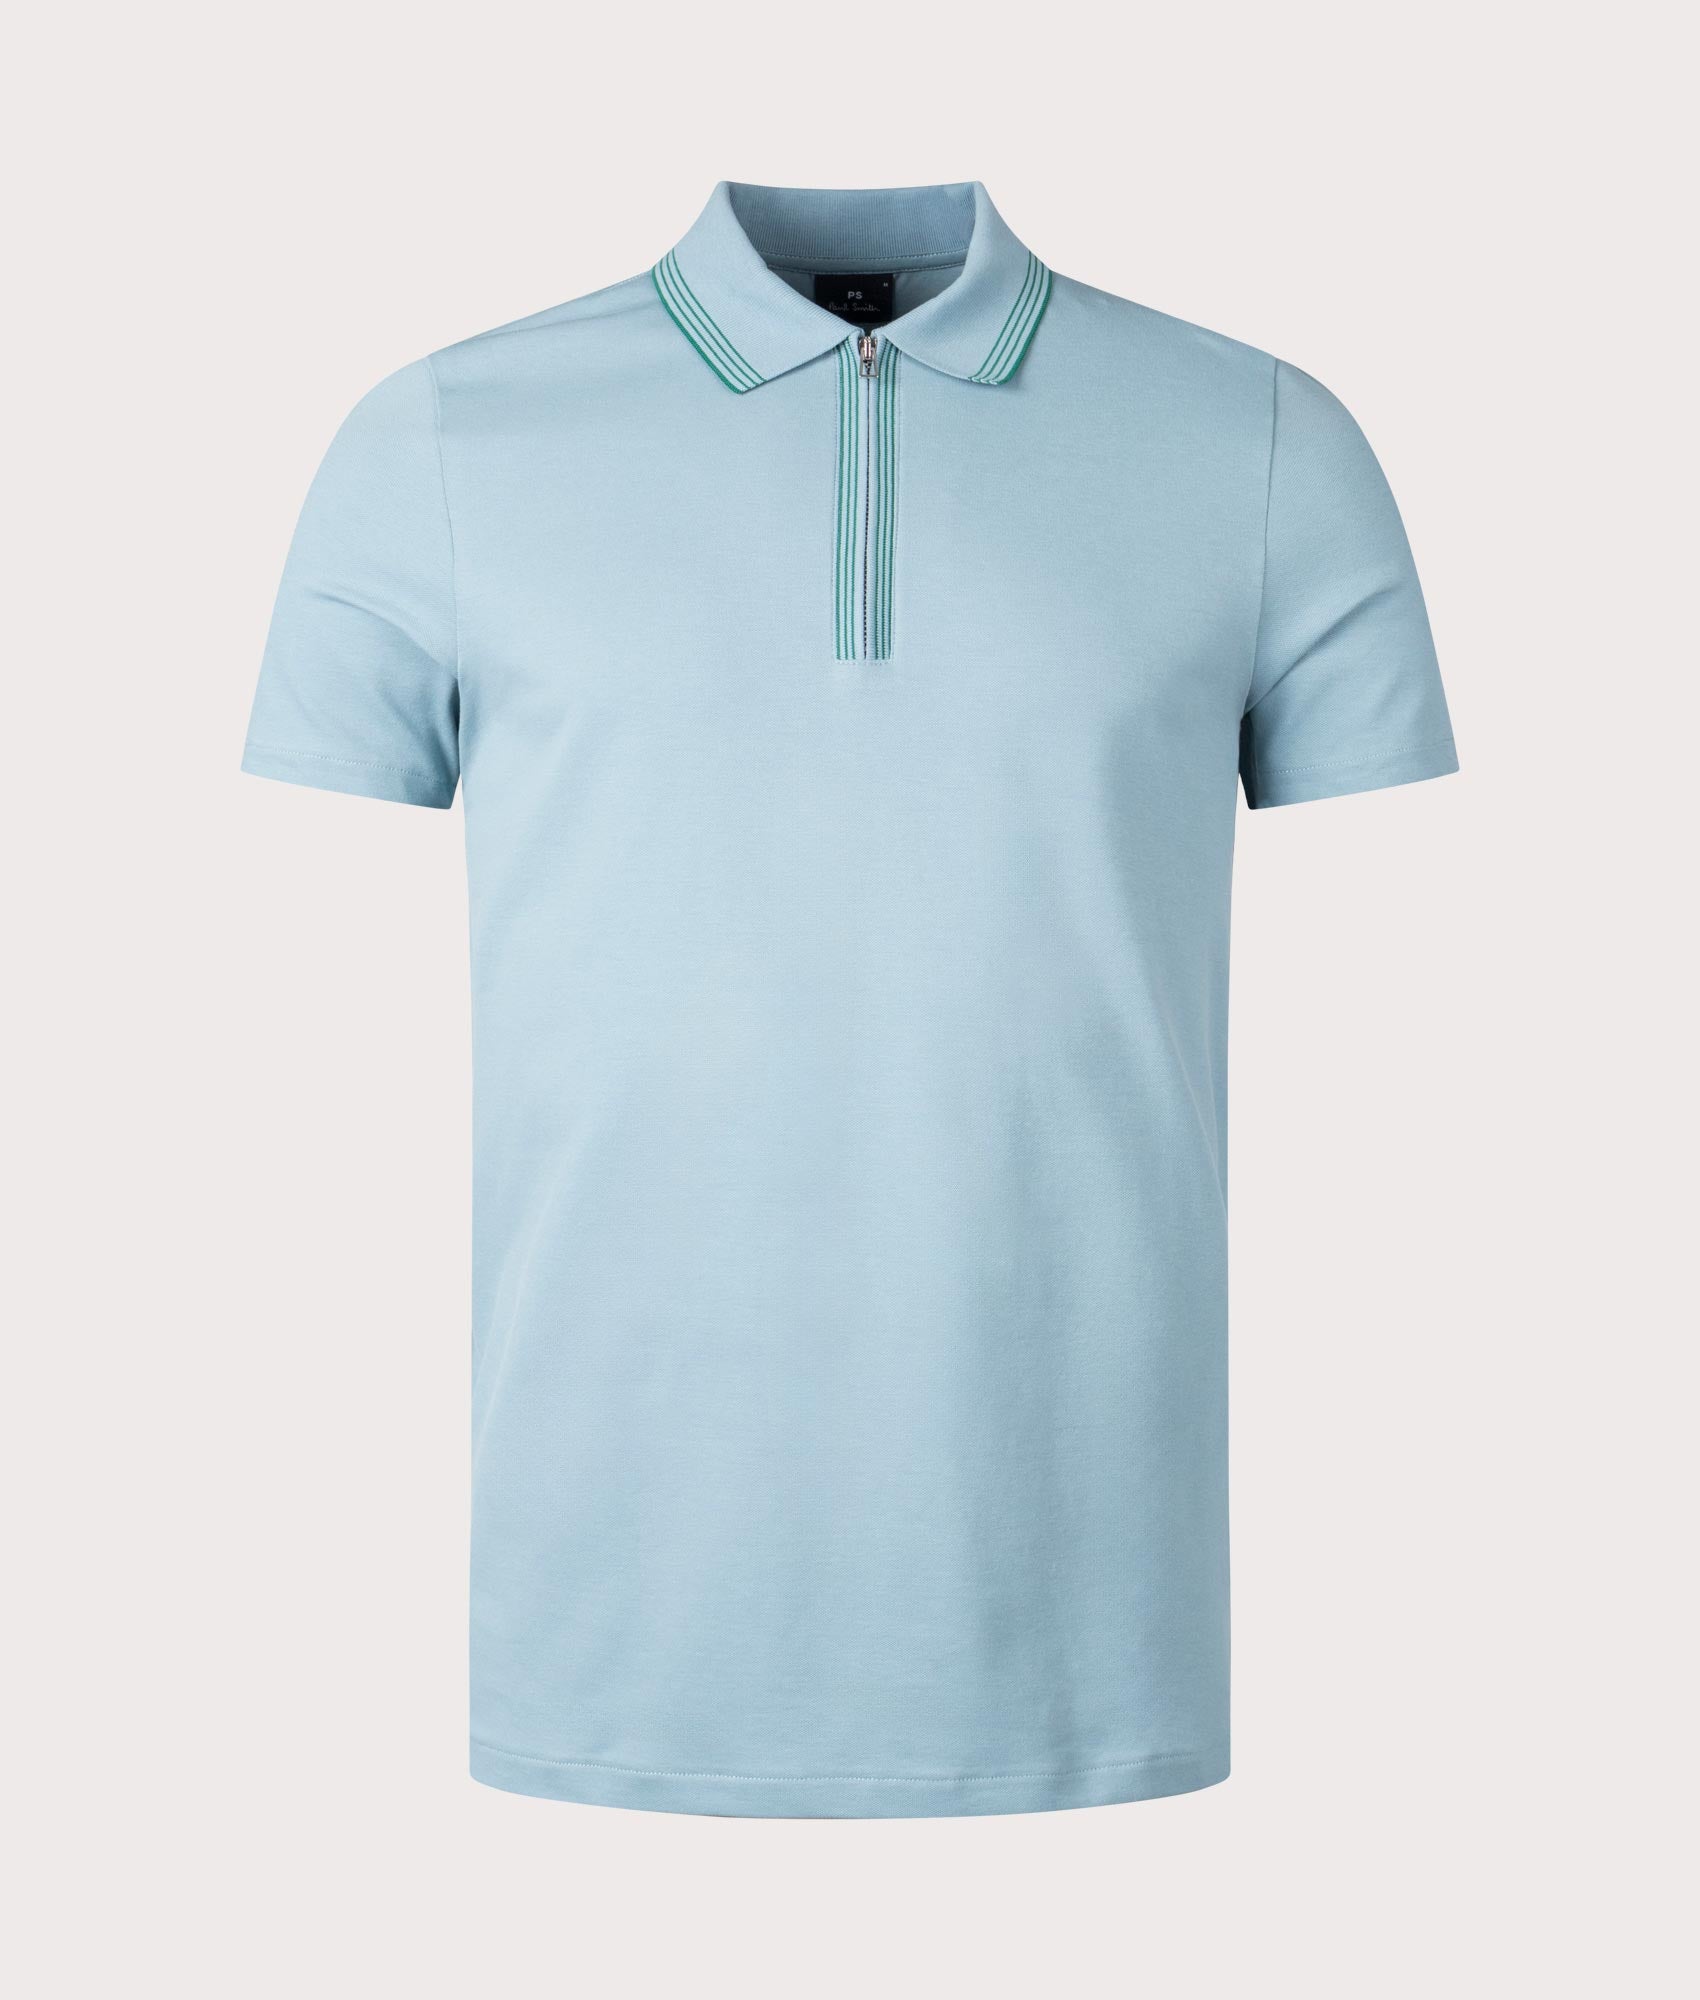 PS Paul Smith Mens Zip Neck Polo Shirt - Colour: 41A Cobalt Blue - Size: Large